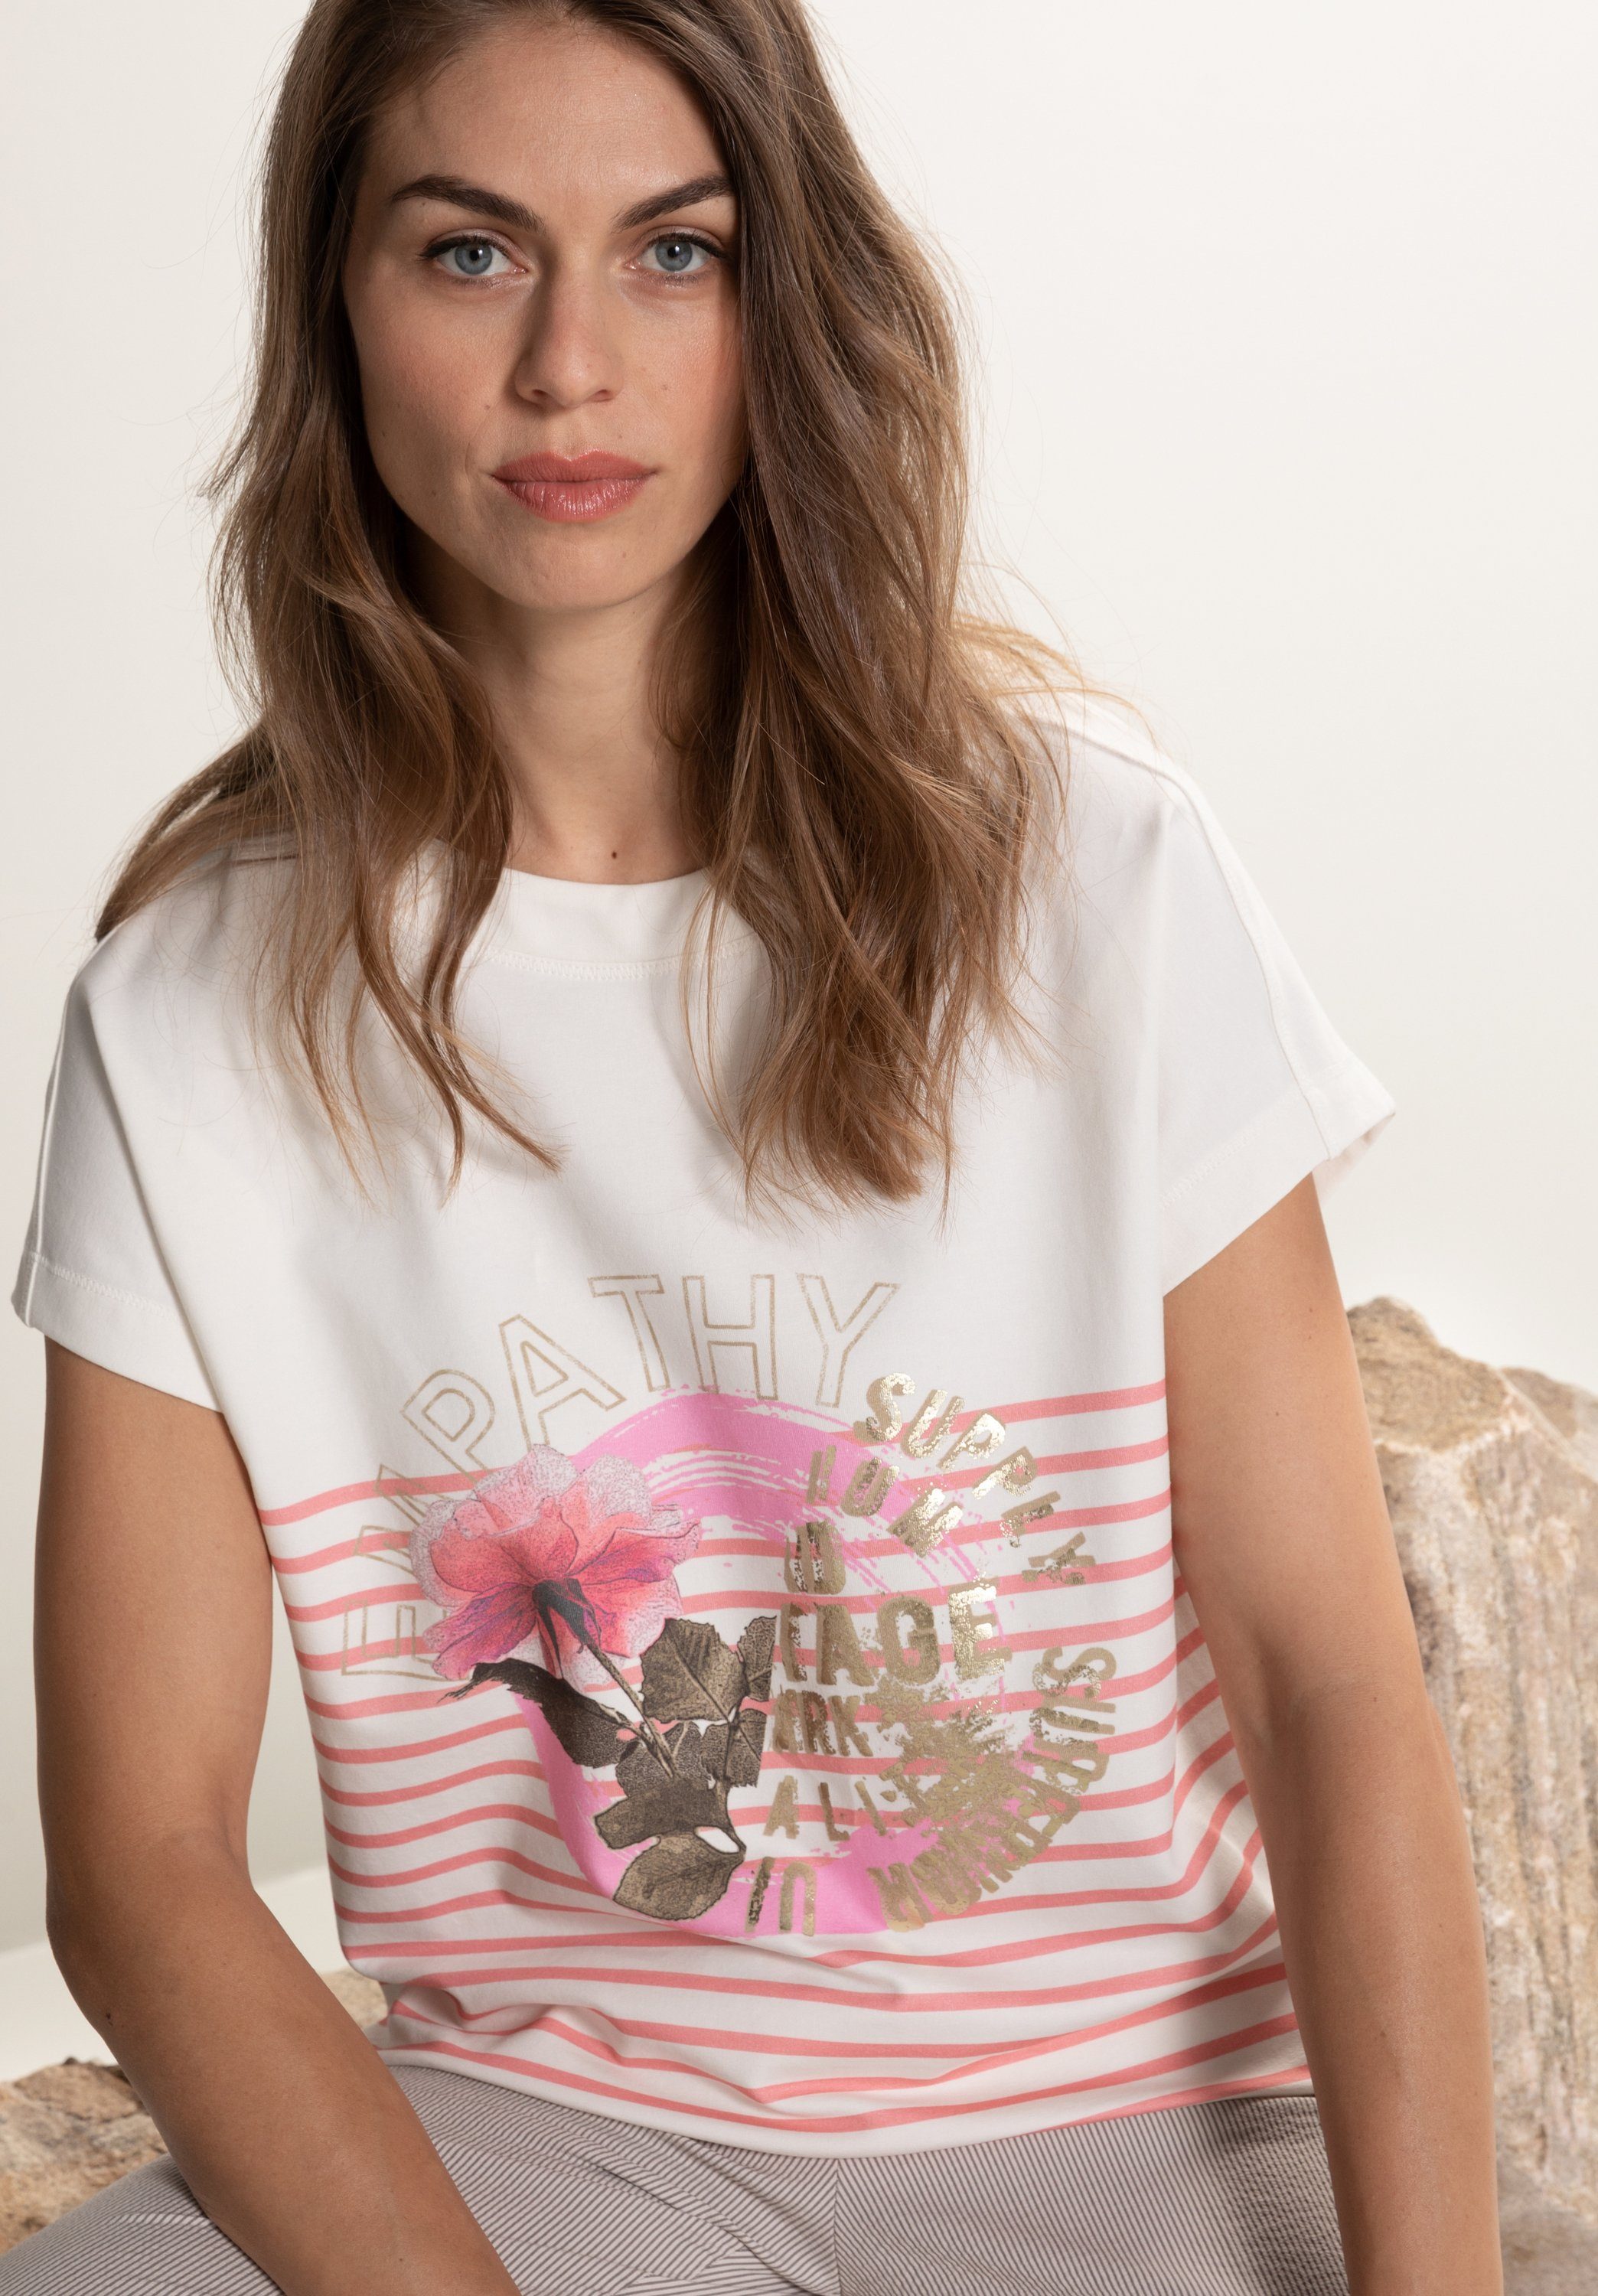 bianca Print-Shirt IDA mit Frontmotiv und modischem Streifen-Design